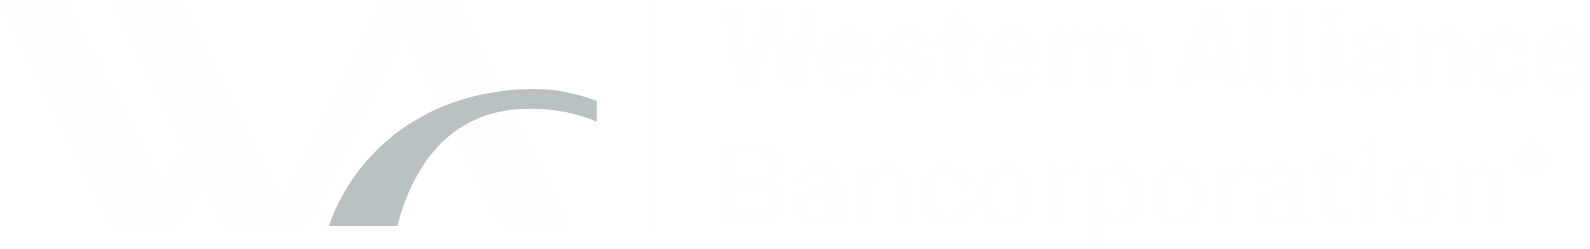 Western Alliance Bancorporation
 logo large for dark backgrounds (transparent PNG)